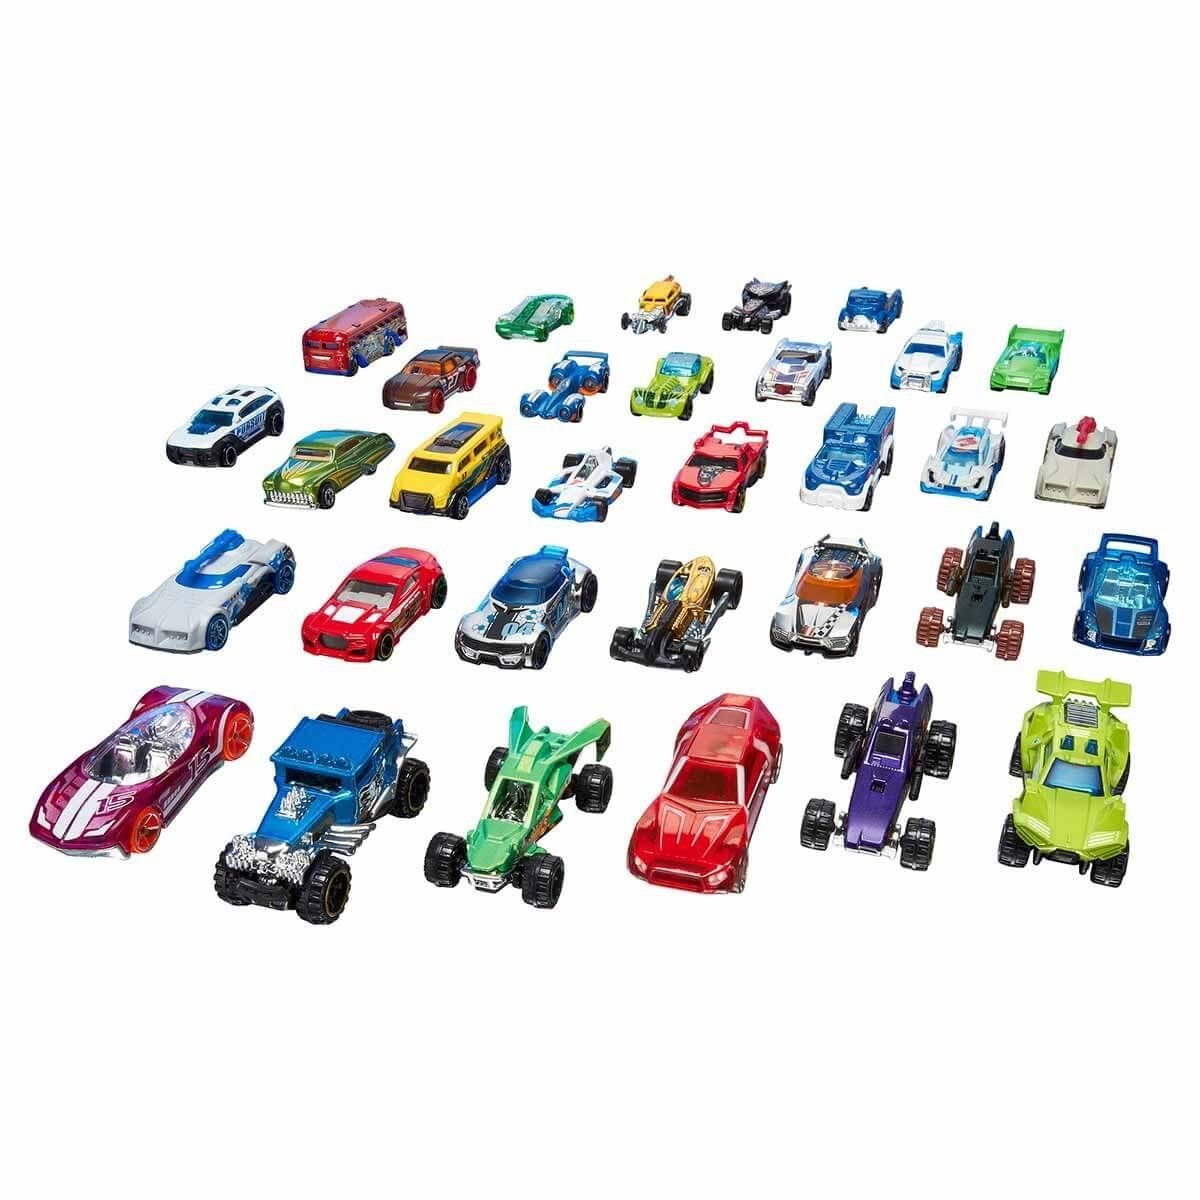 Hot Wheels 20'Li Araba Seti 1 31 Aralık Erkol Özel Kampanya Fiyatı Oyuncak Arabalar ve Setleri | Milagron 